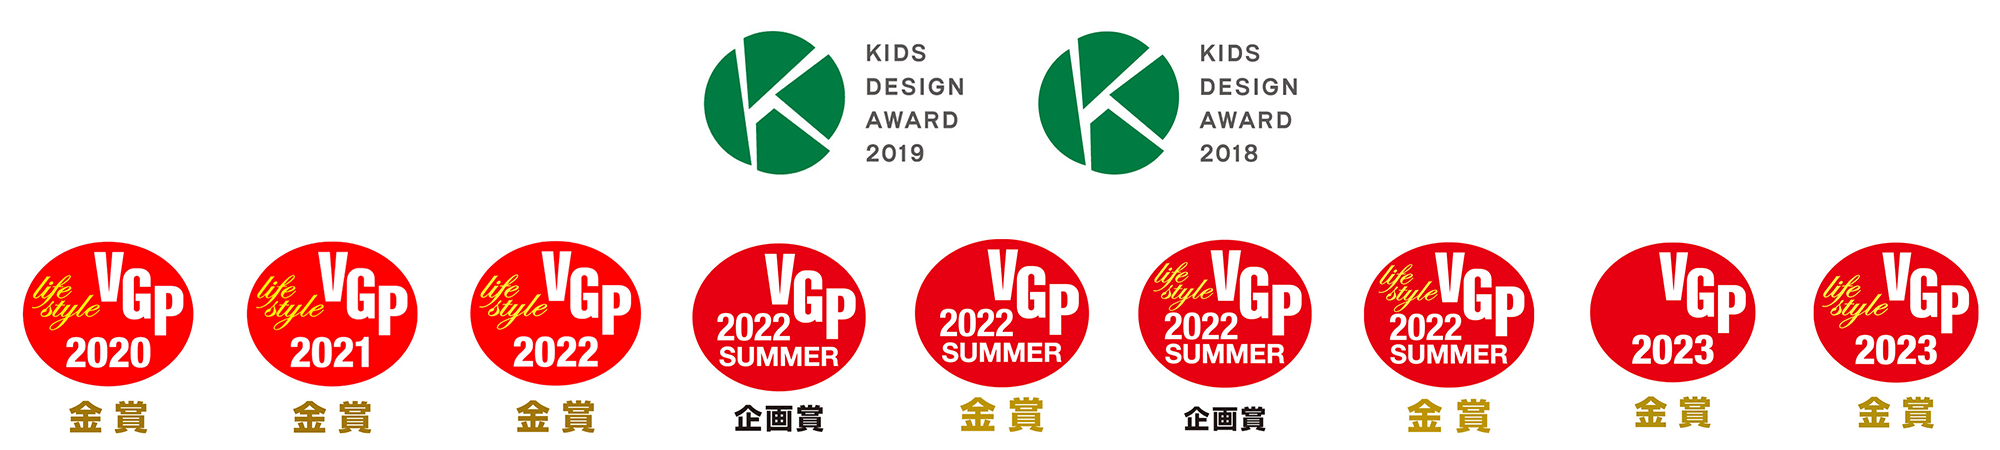 2018年及び2019年キッズデザイン賞受賞、VGP金賞受賞